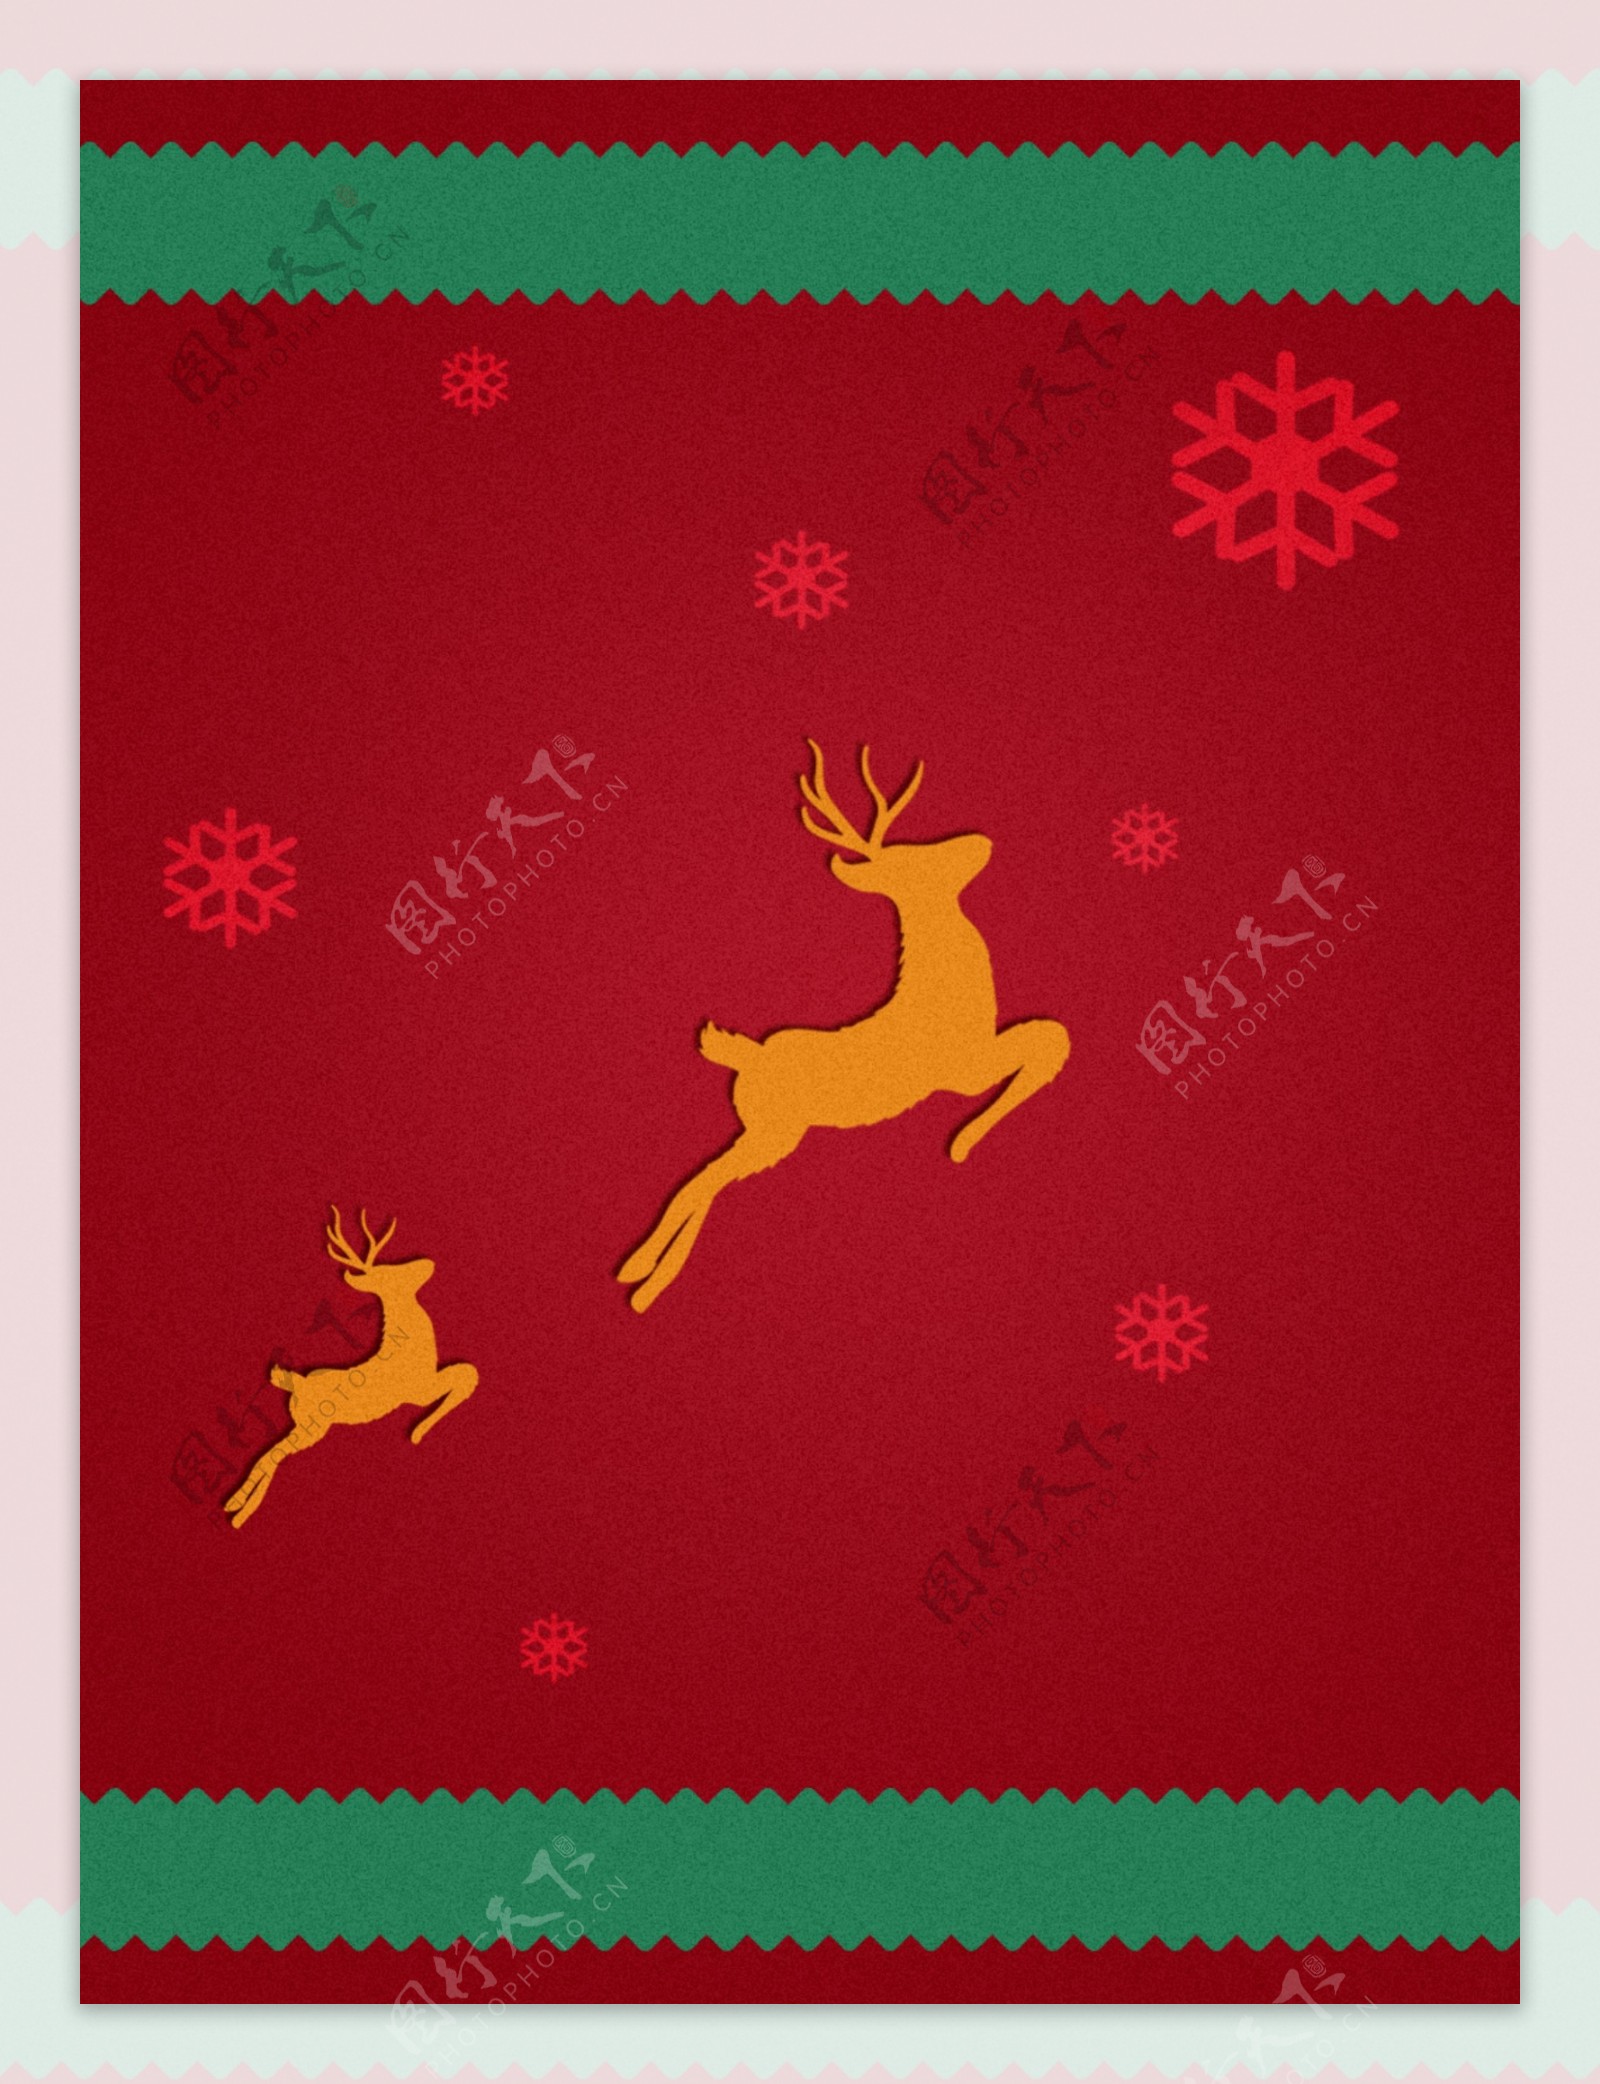 原创麋鹿铃铛圣诞红色背景